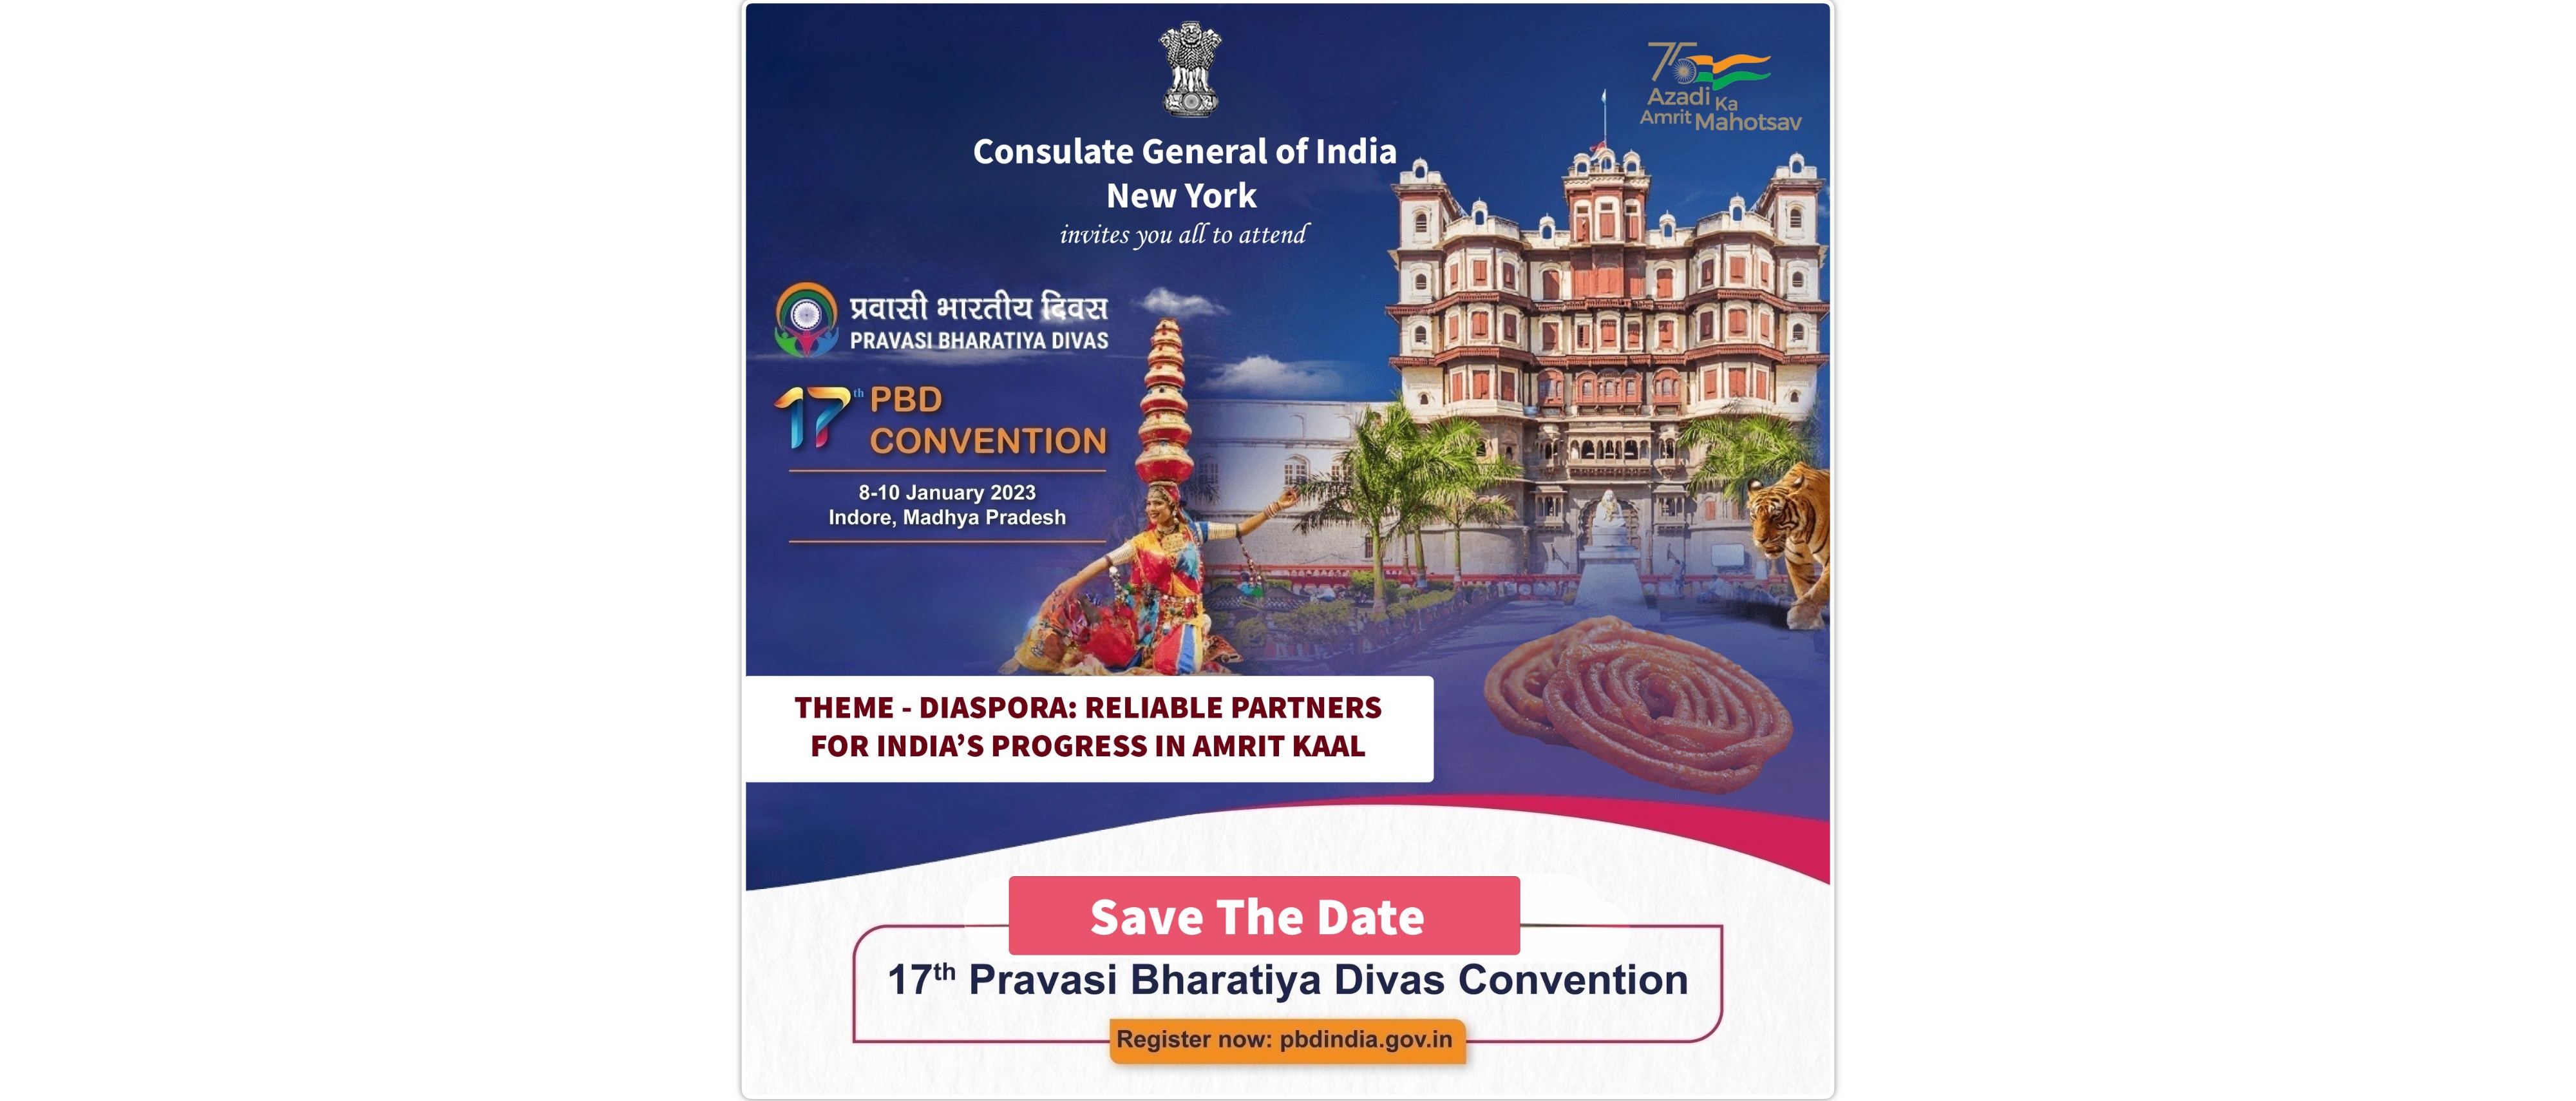  17th Pravasi Bharatiya Divas Convention to be held at Indore, Madhya Pradesh from Jan 8-10, 2023